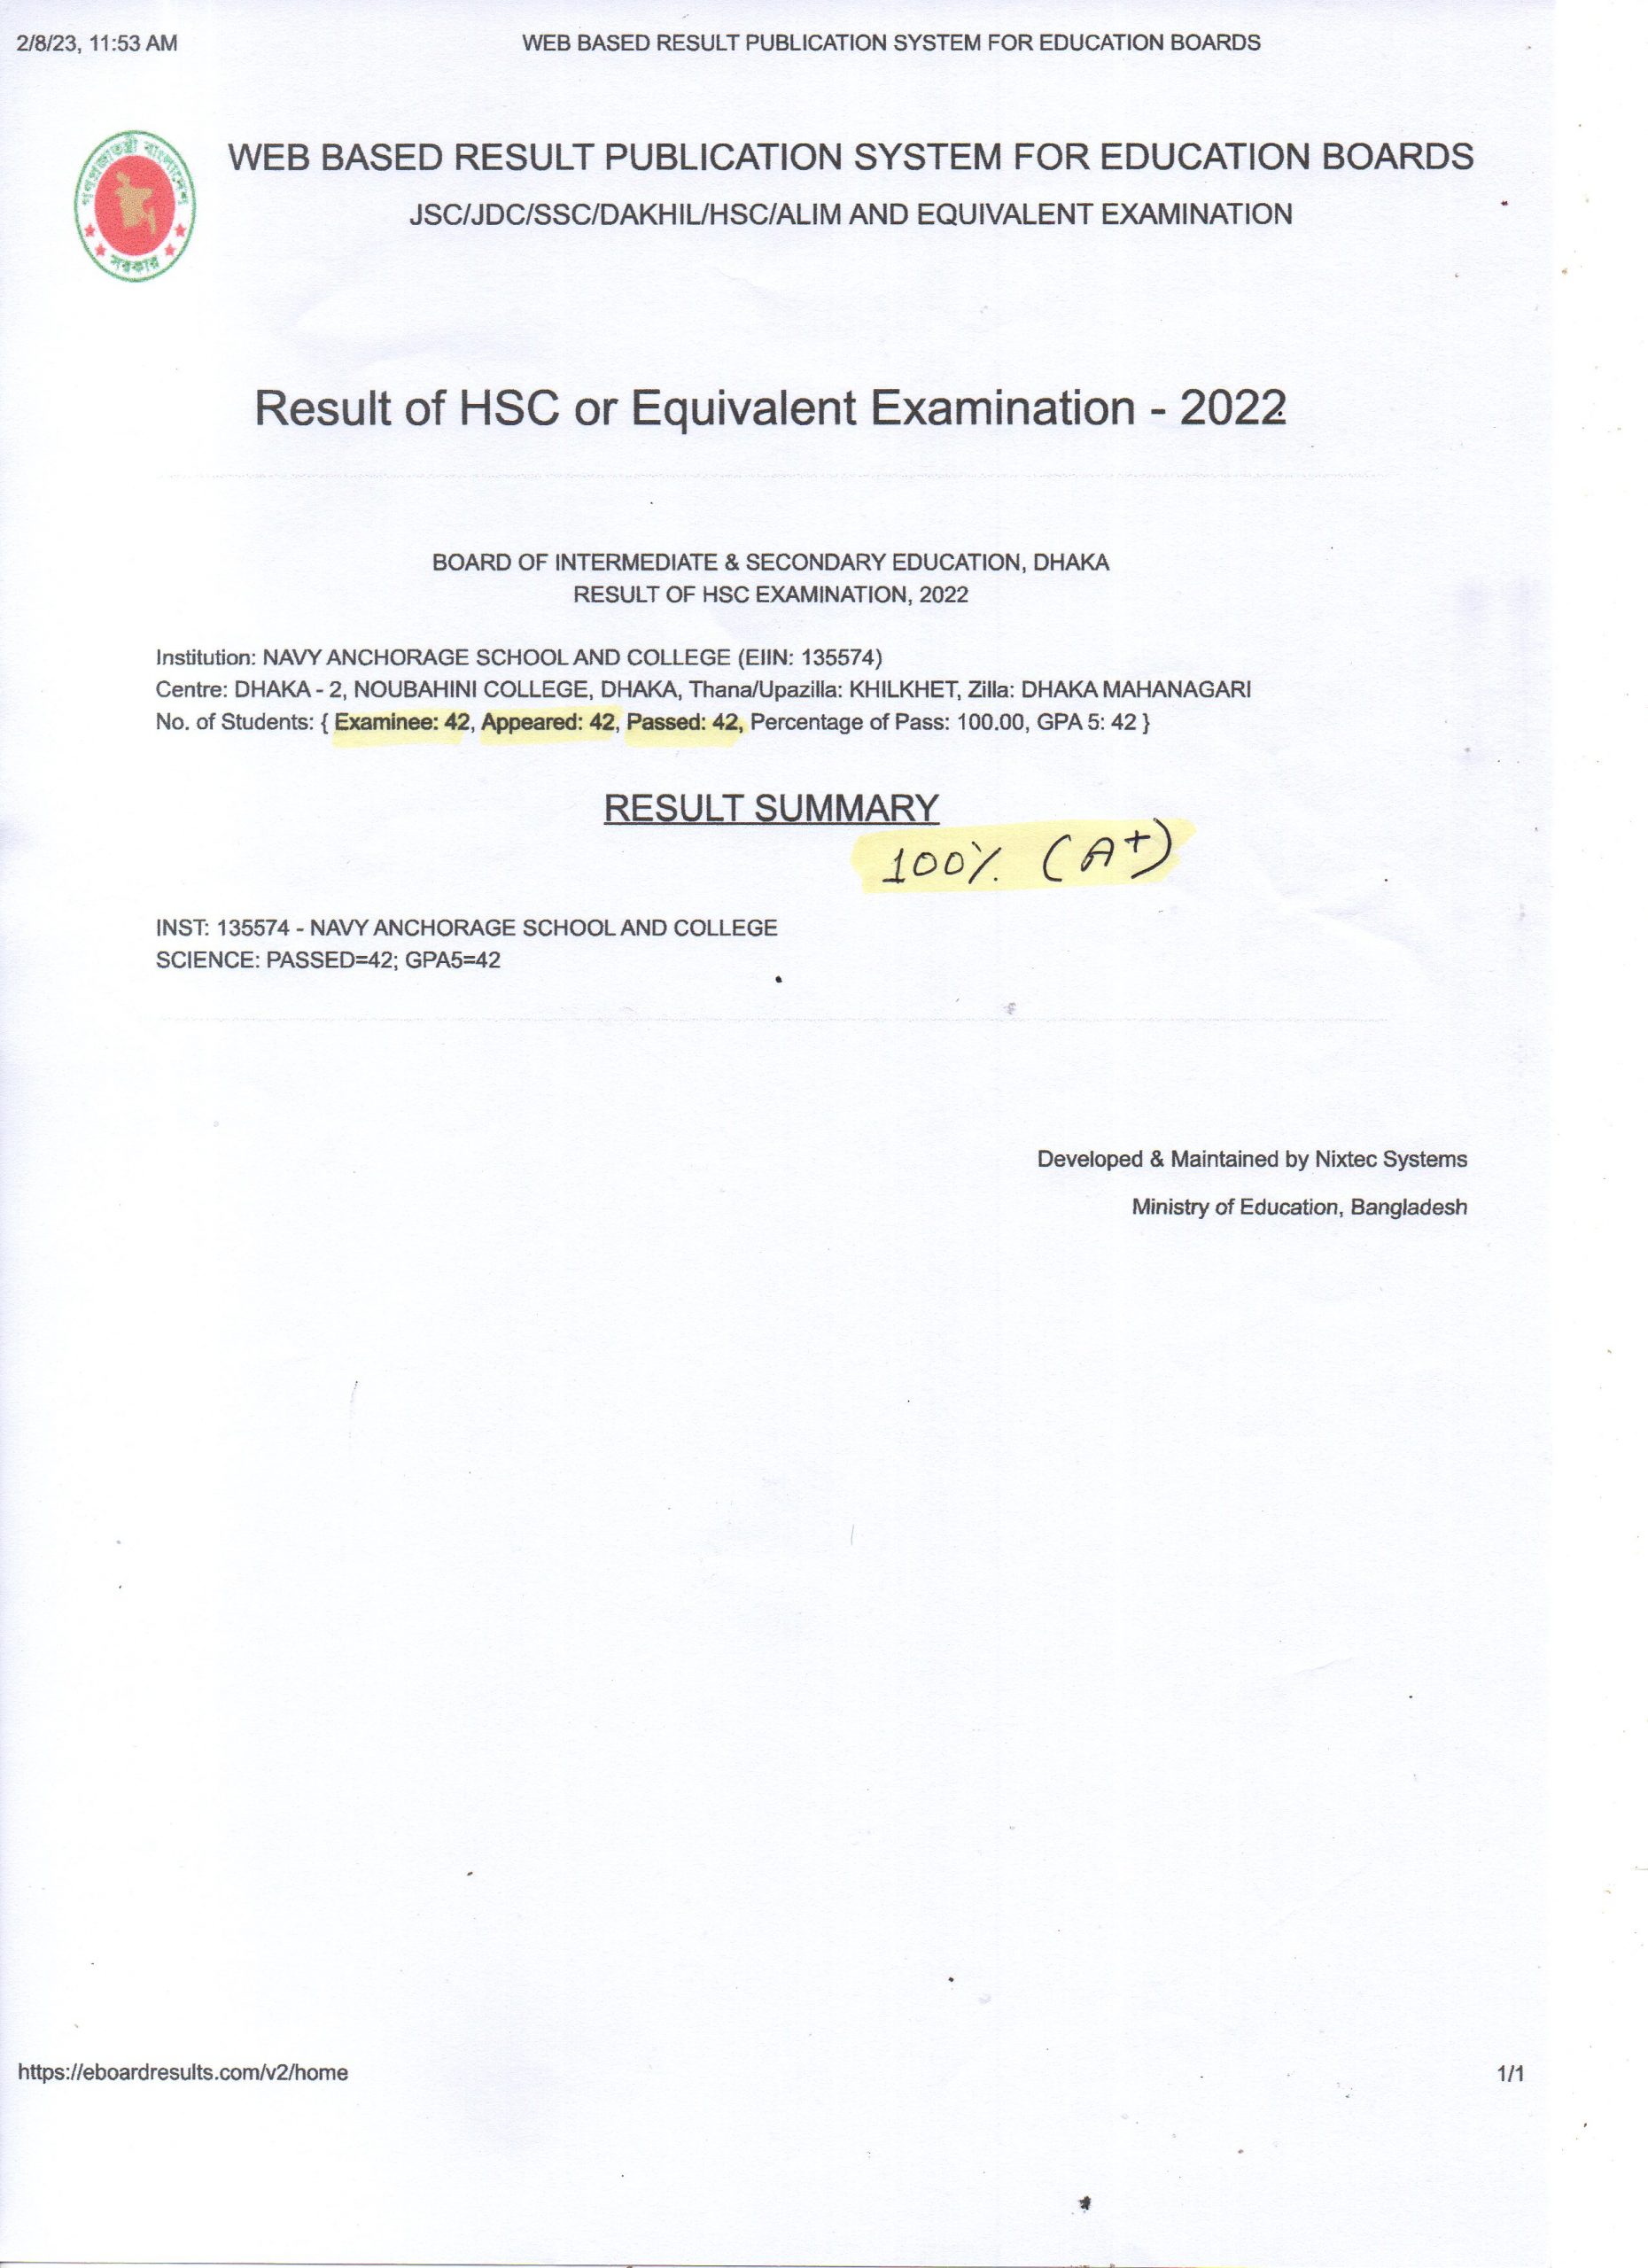 result-of-hsc-examination-2022